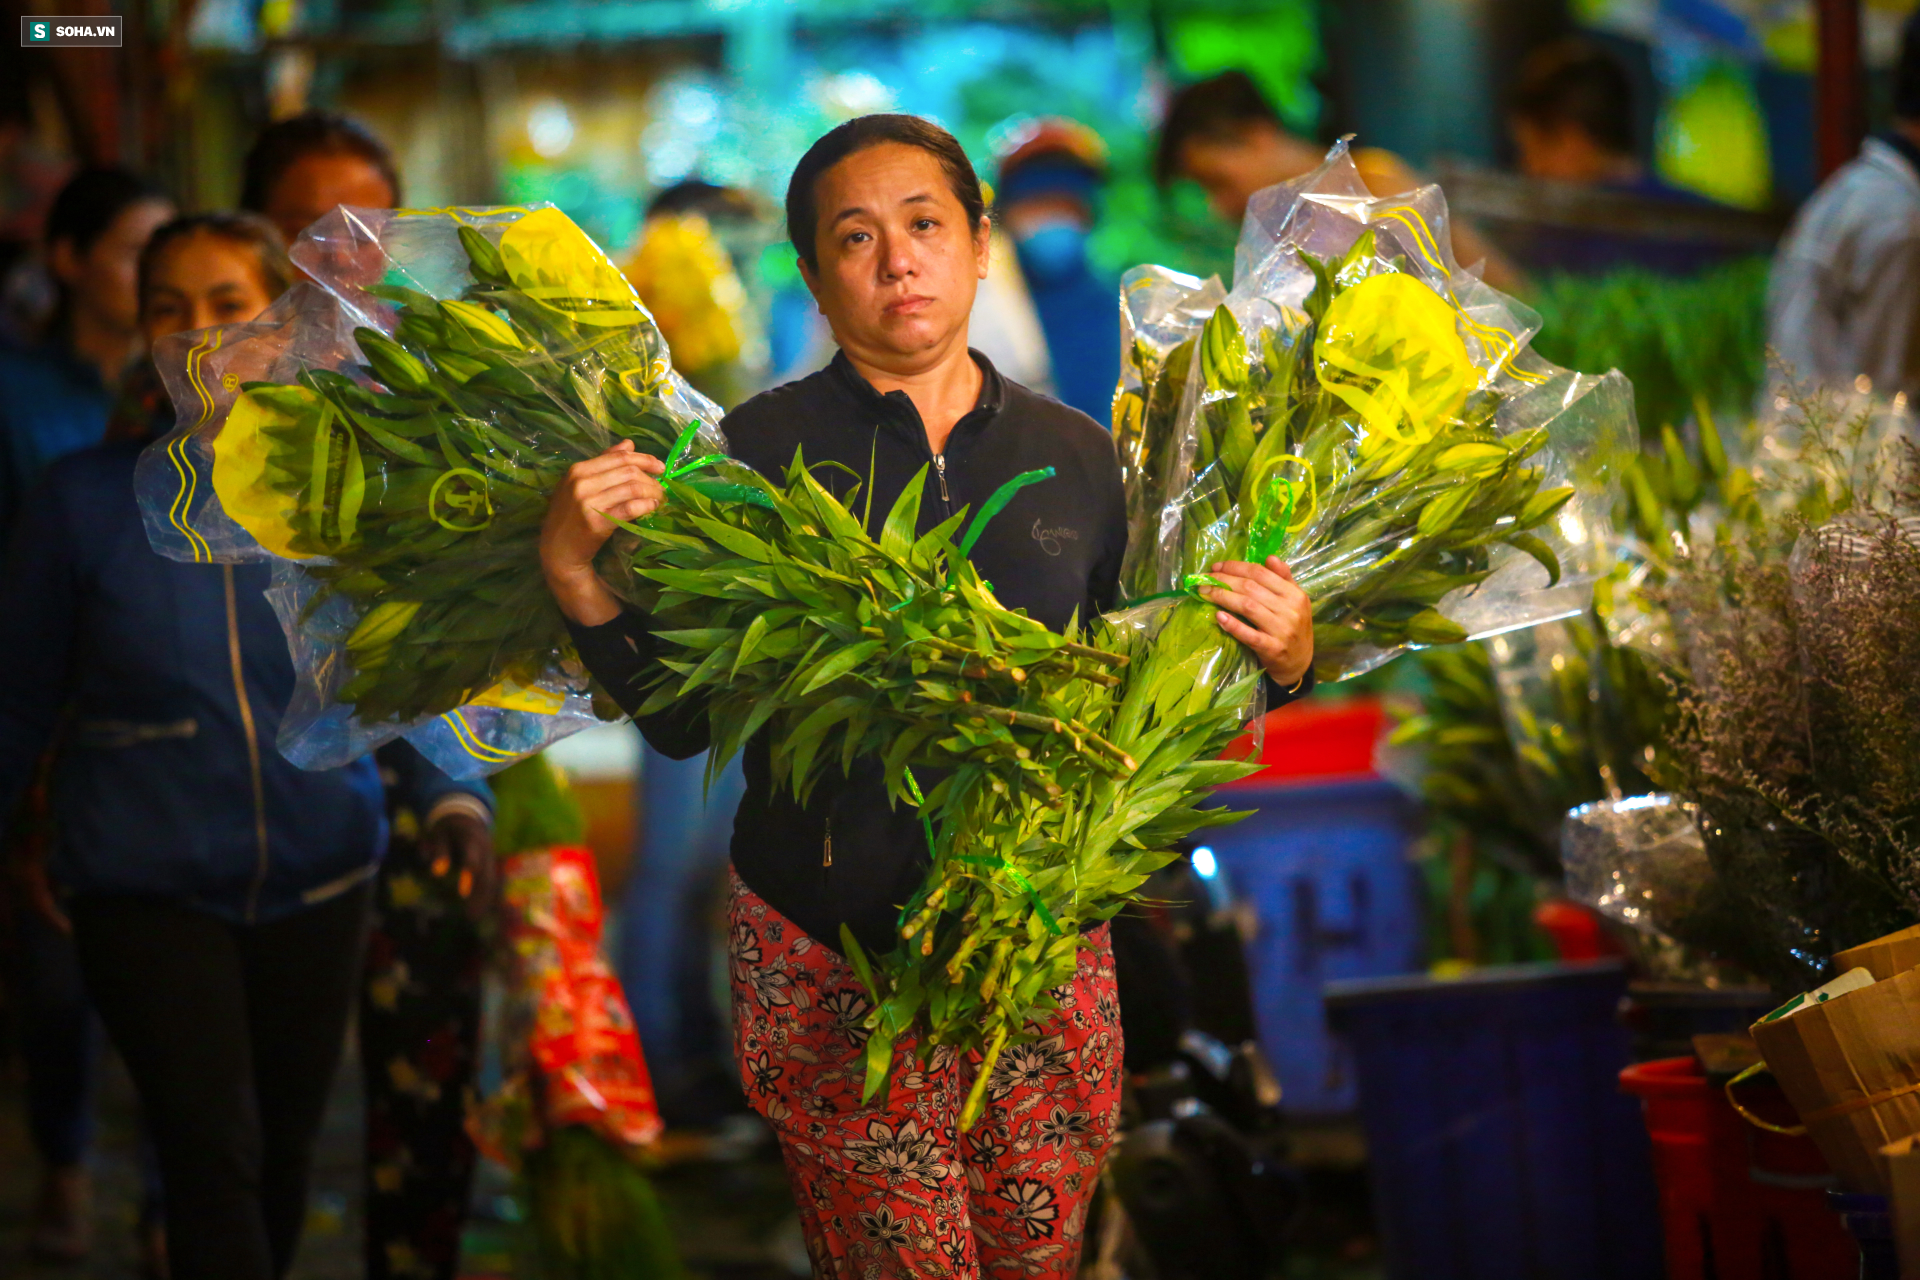 Chợ hoa 30 năm không ngủ ở Sài Gòn nhộn nhịp lúc 2 giờ sáng đón ngày 8/3 - Ảnh 4.